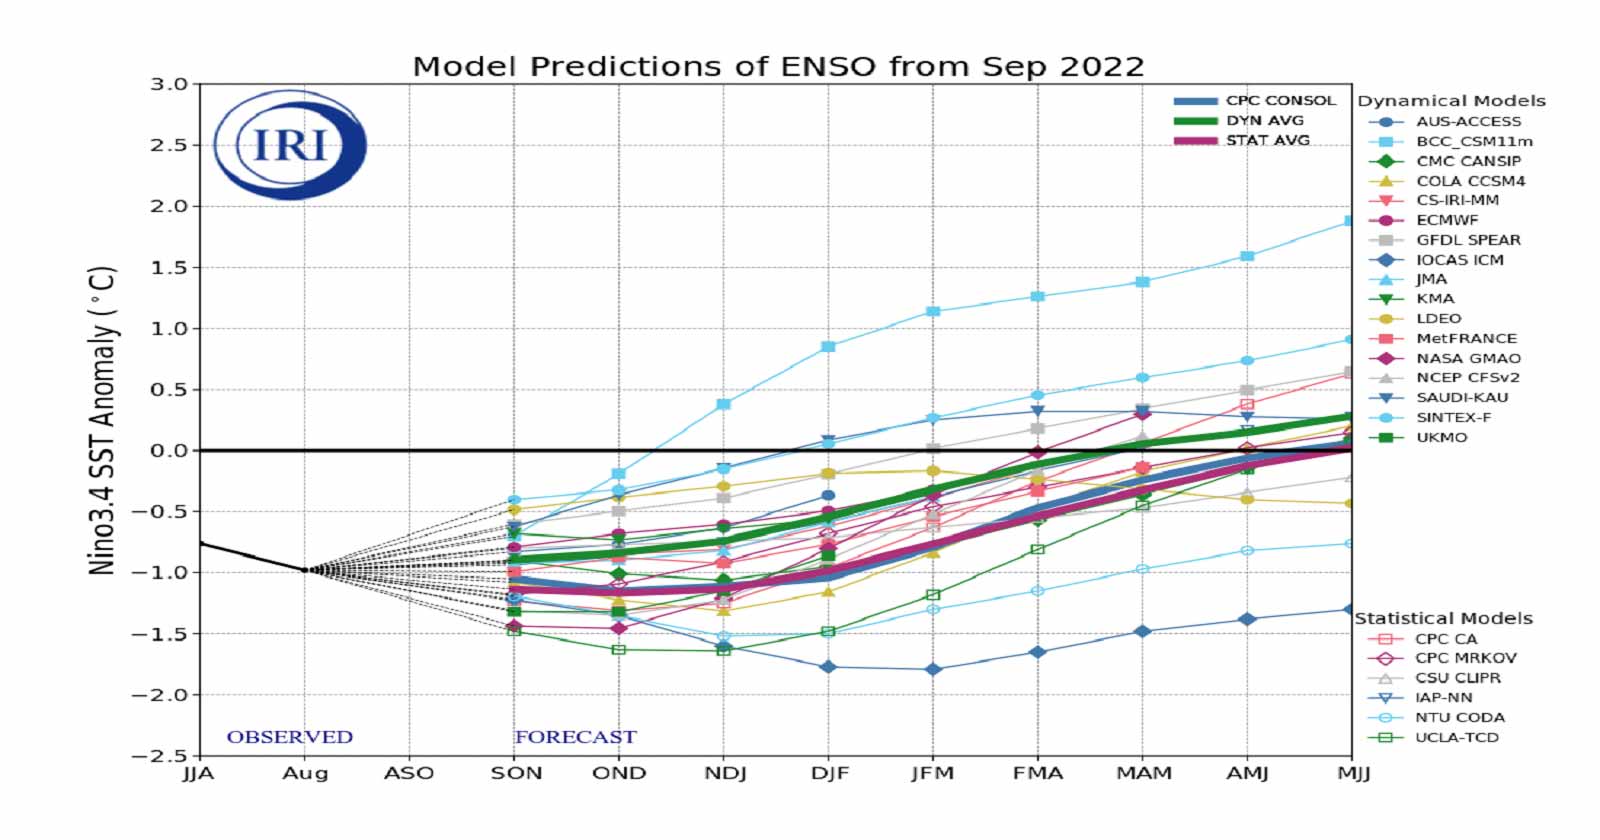 Previsione Enso dal settembre 2022